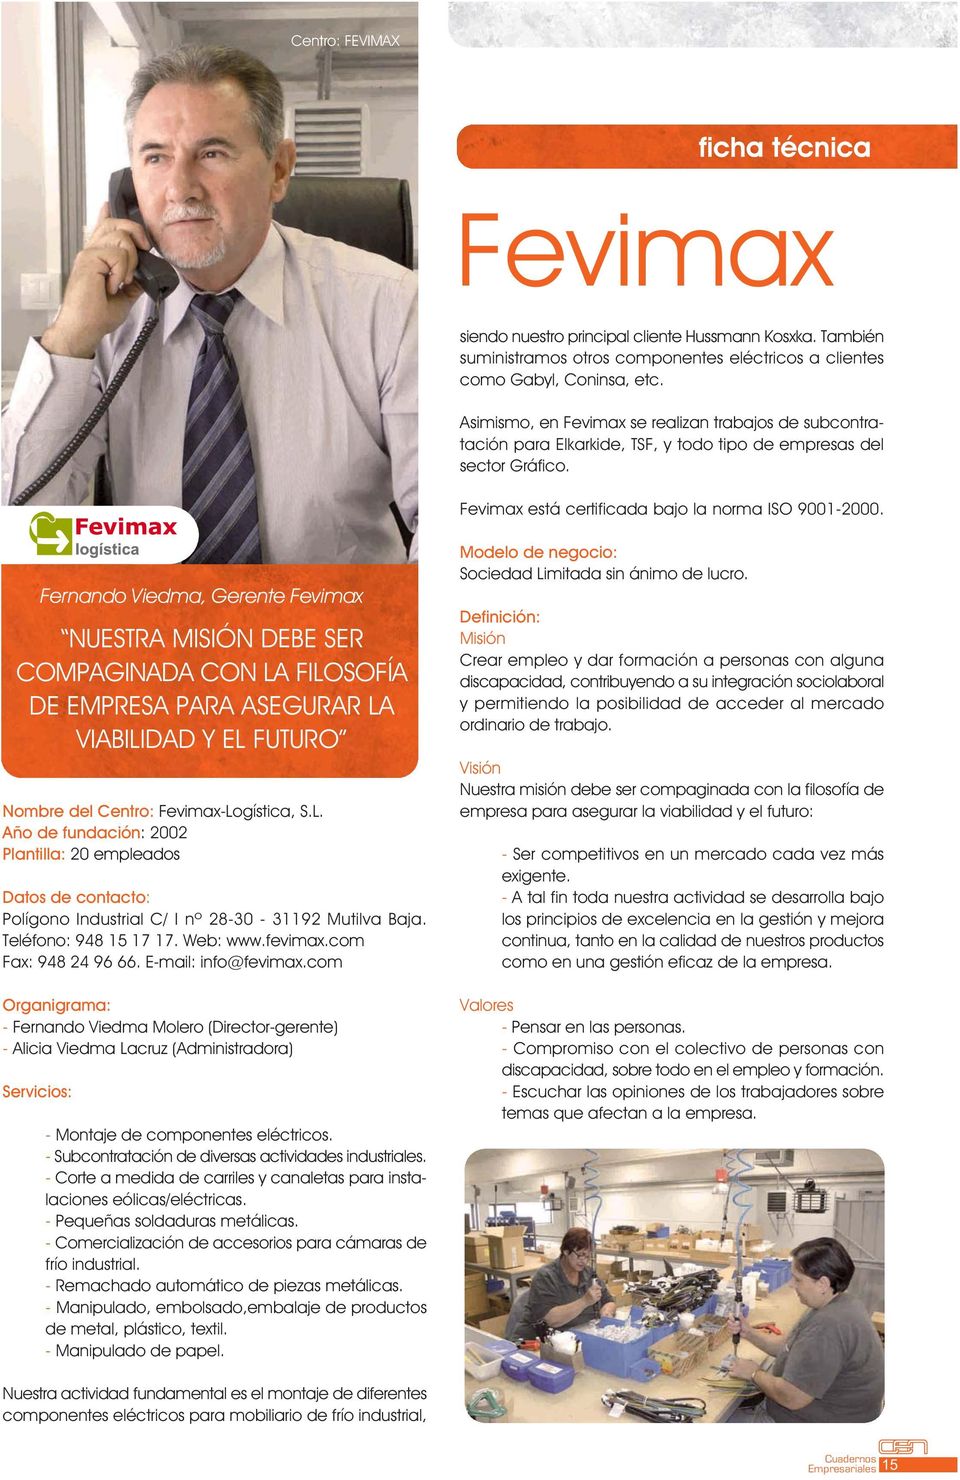 Nombre del Centro: Fevimax-Logística, S.L. Año de fundación: 2002 Plantilla: 20 empleados Datos de contacto: Polígono Industrial C/ I nº 28-30 - 31192 Mutilva Baja. Teléfono: 948 15 17 17. Web: www.